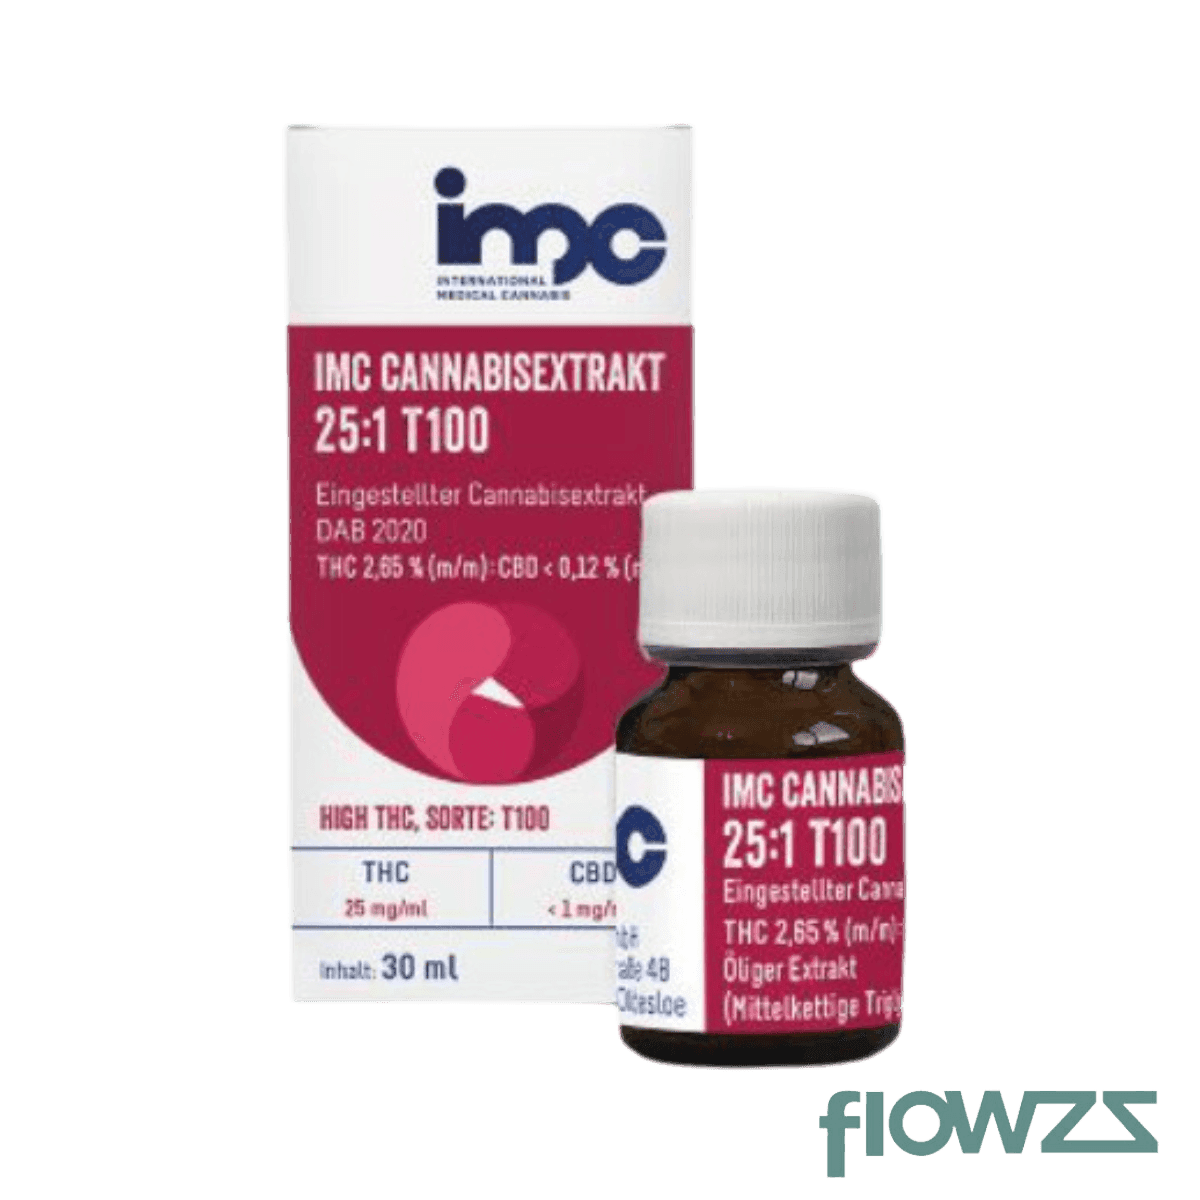 IMC Cannabis Extrakt 25:1 T100 - flowzz.com Preisvergleich